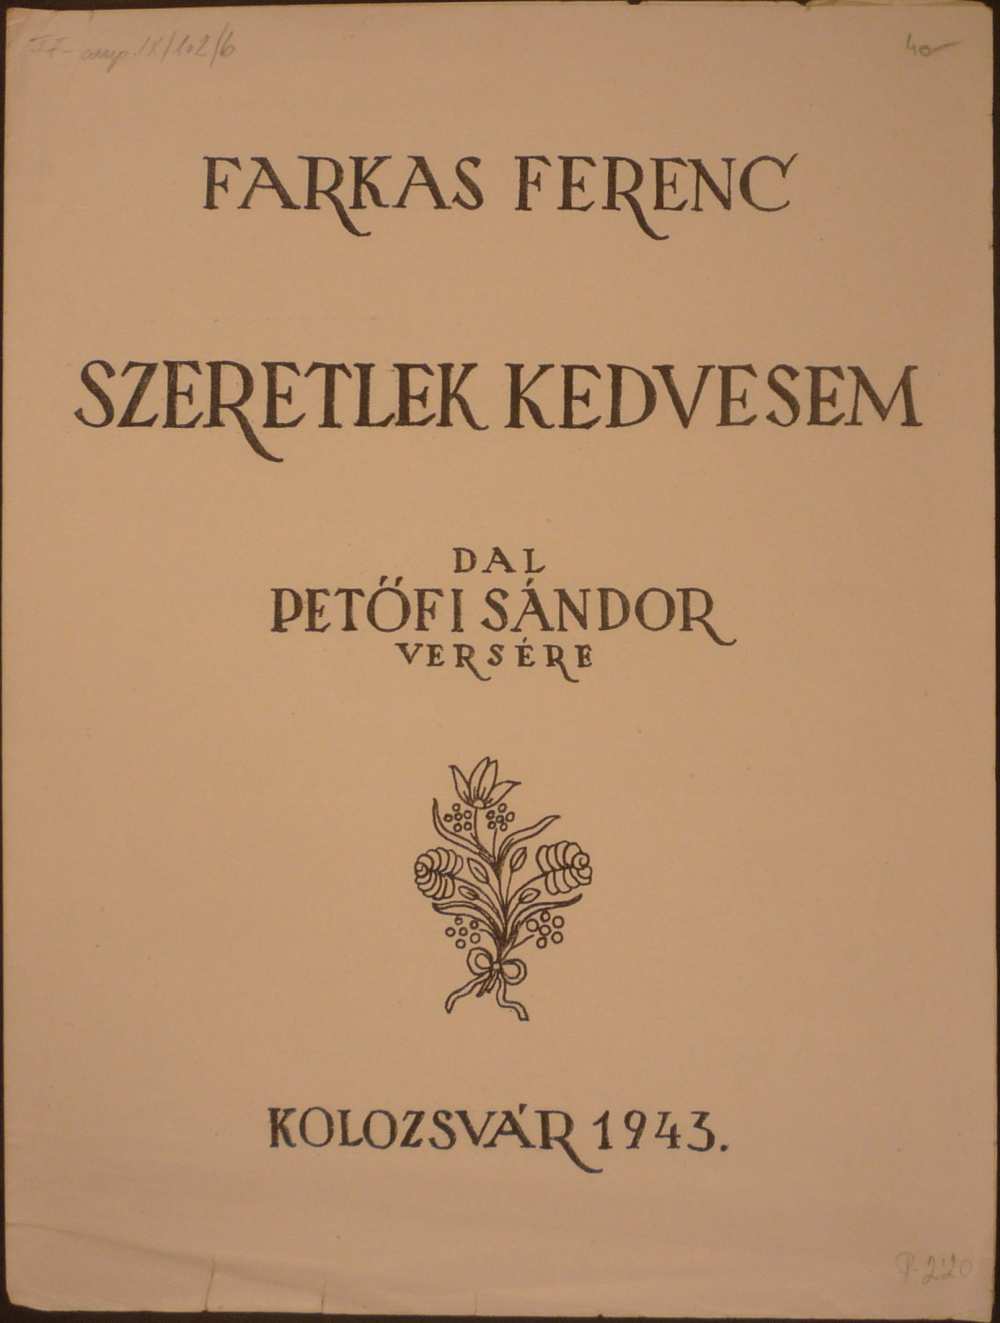 Farkas Ferenc: Szeretlek kedvesem. Dal Petőfi Sándor versére, Kolozsvár, Farkas Ferenc, 1943. – Színháztörténeti és Zeneműtár, FF-comp. IX/102/b